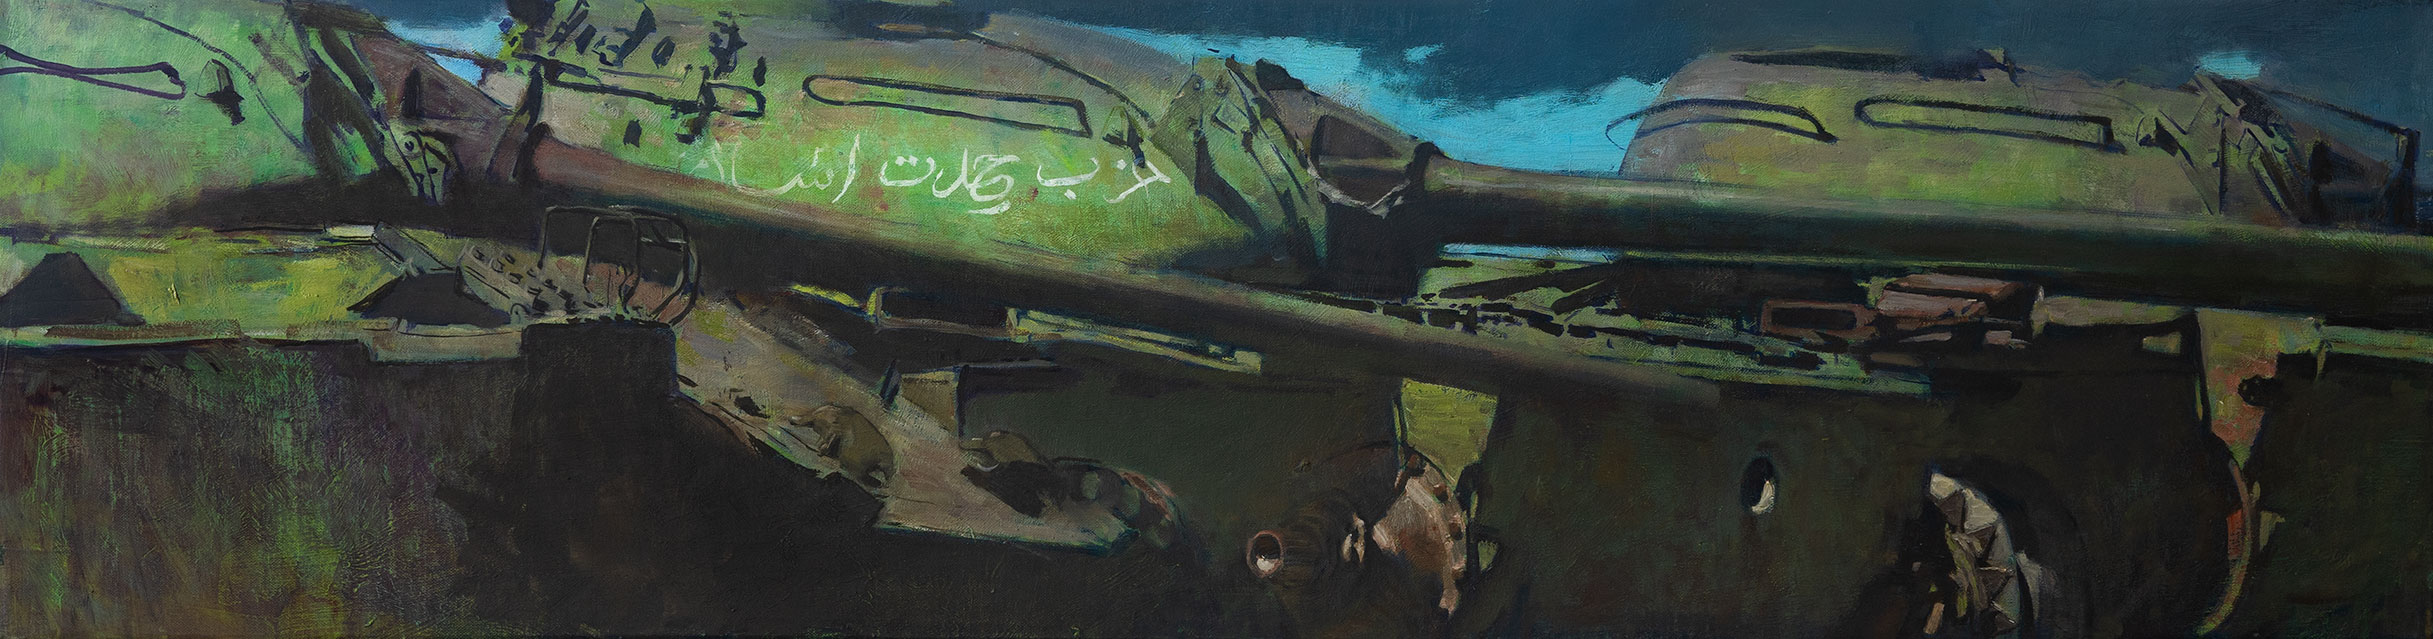 Воины-интернационалисты - 1, Александр Греков, Купить картину Масло